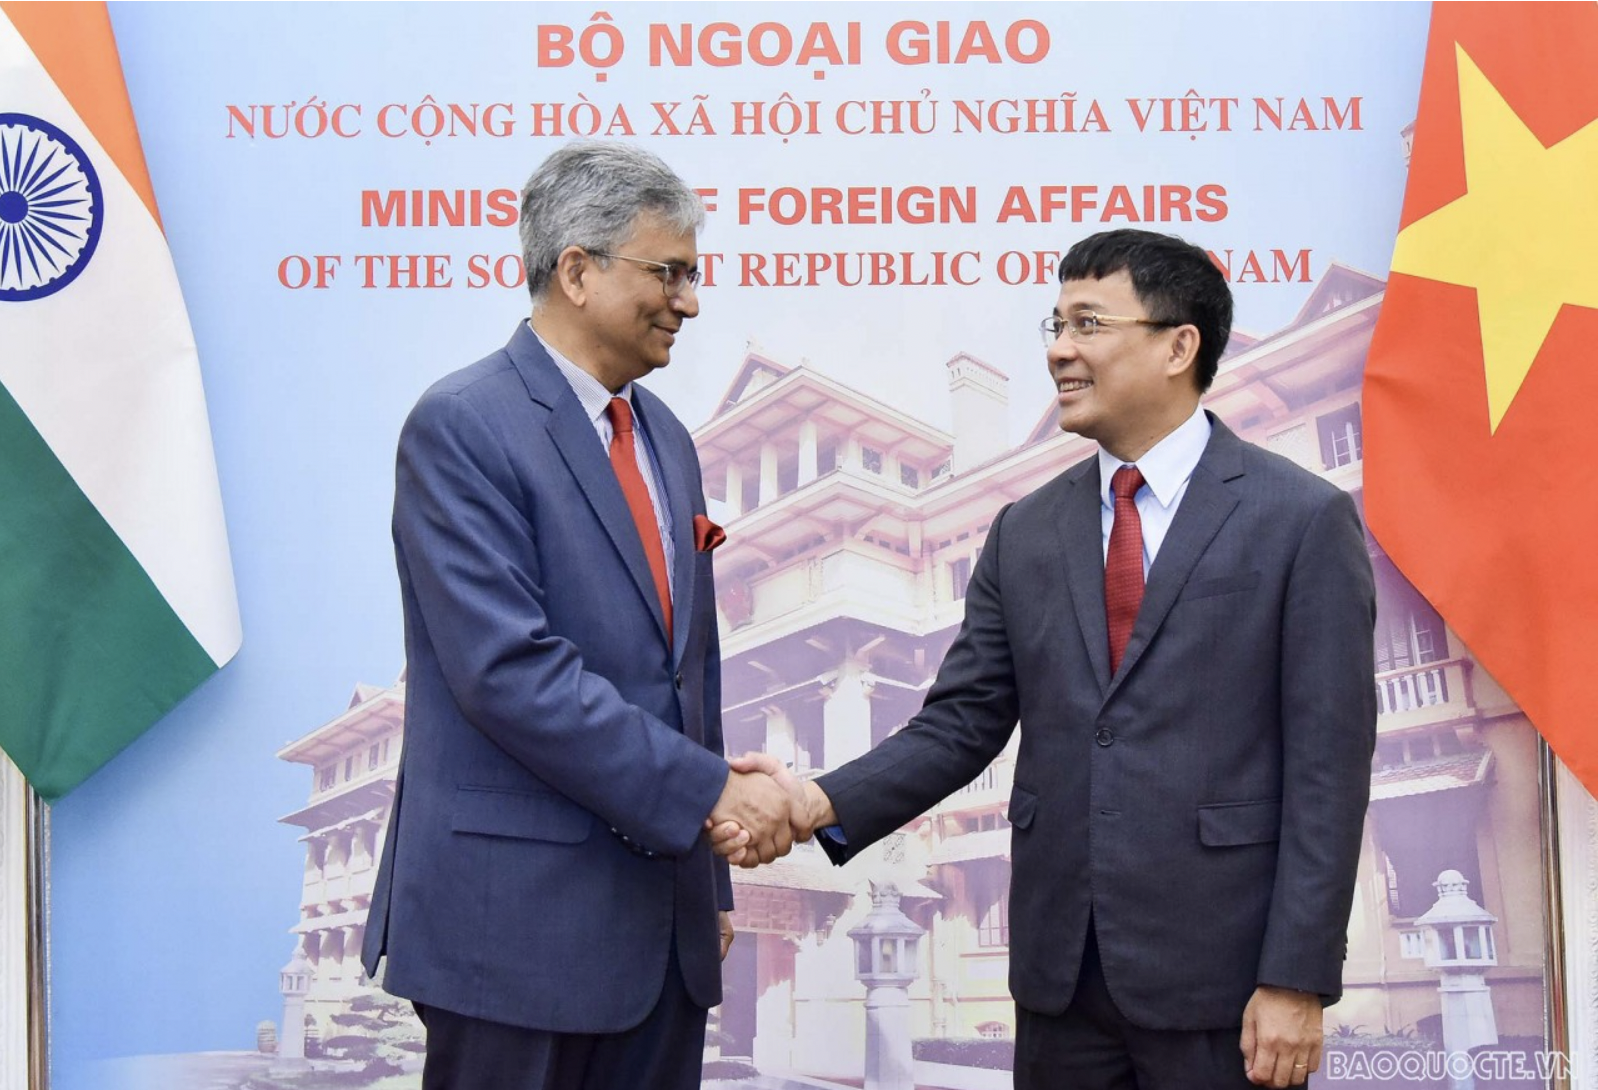 Thứ trưởng Thường trực Nguyễn Minh Vũ đề nghị Ấn Độ tiếp tục tạo điều kiện thuận lợi cho thương mại song phương. Ảnh: Bộ Ngoại giao